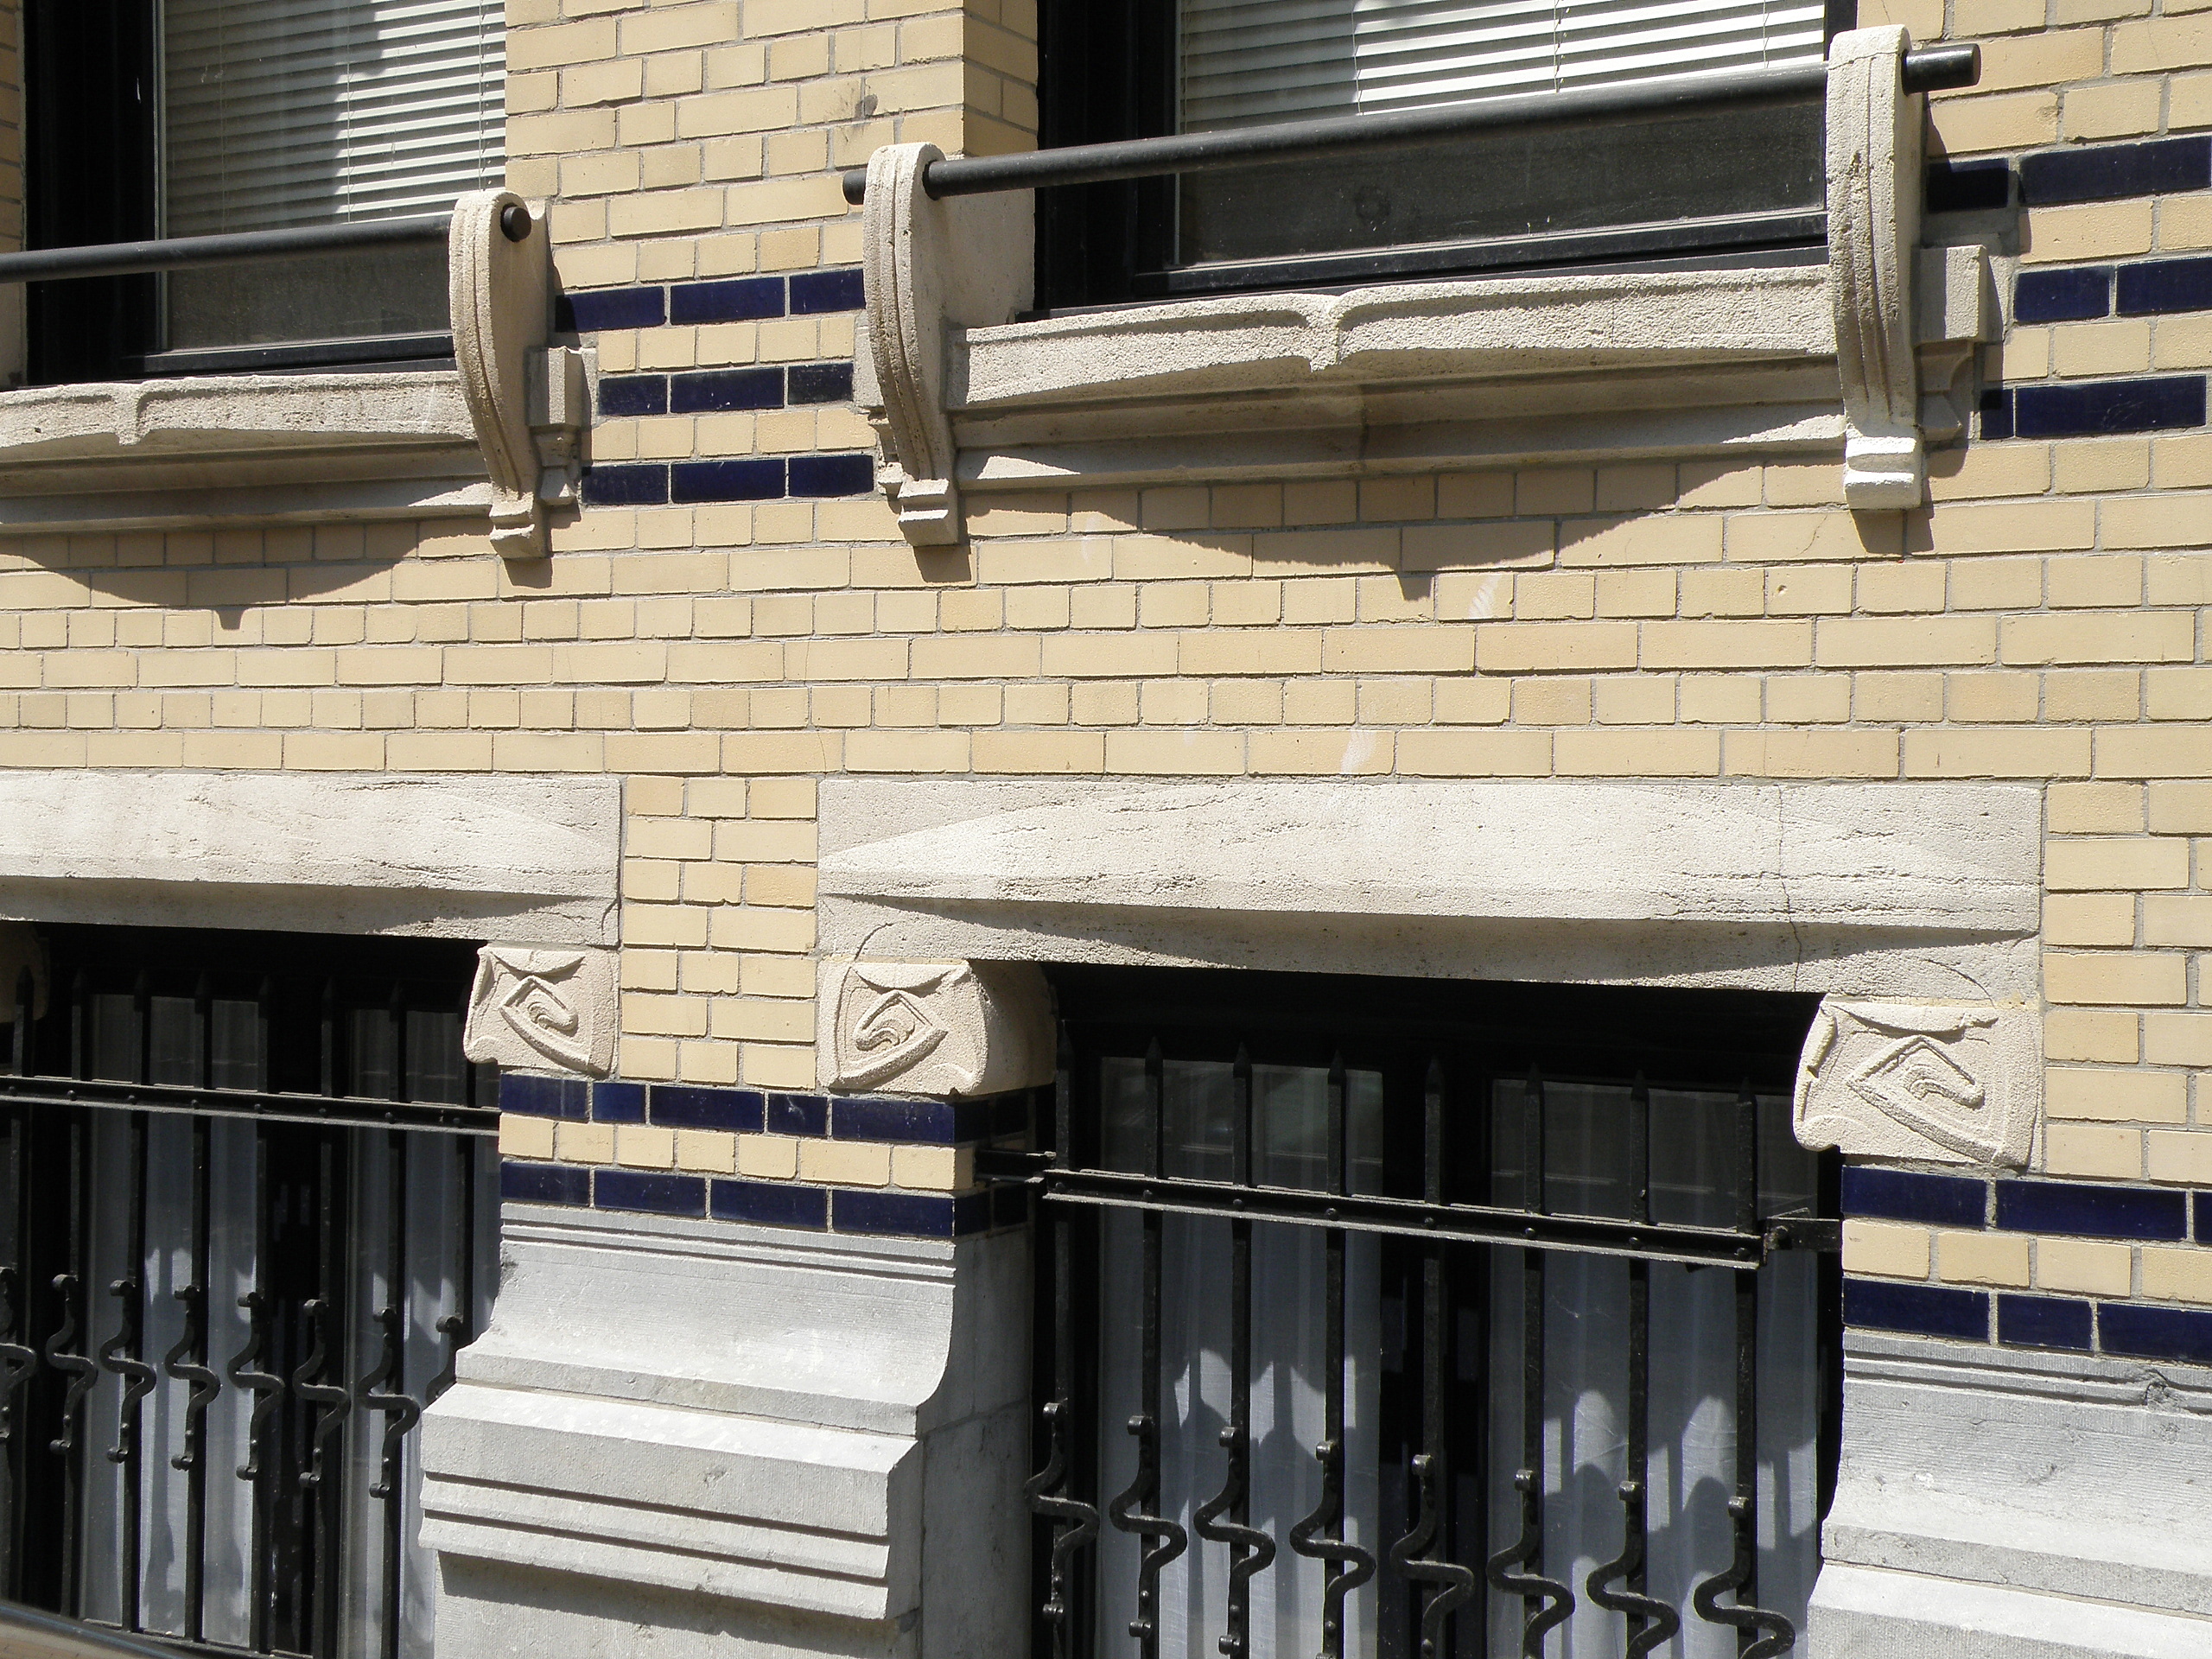 L'appui de baie est la partie maçonnée sur laquelle la fenêtre est posée. On voit ici un appui de fenêtre d'une maison de style Art nouveau située en Belgique. © Torsades de Pointe, Domaine public, Wikimedia Commons